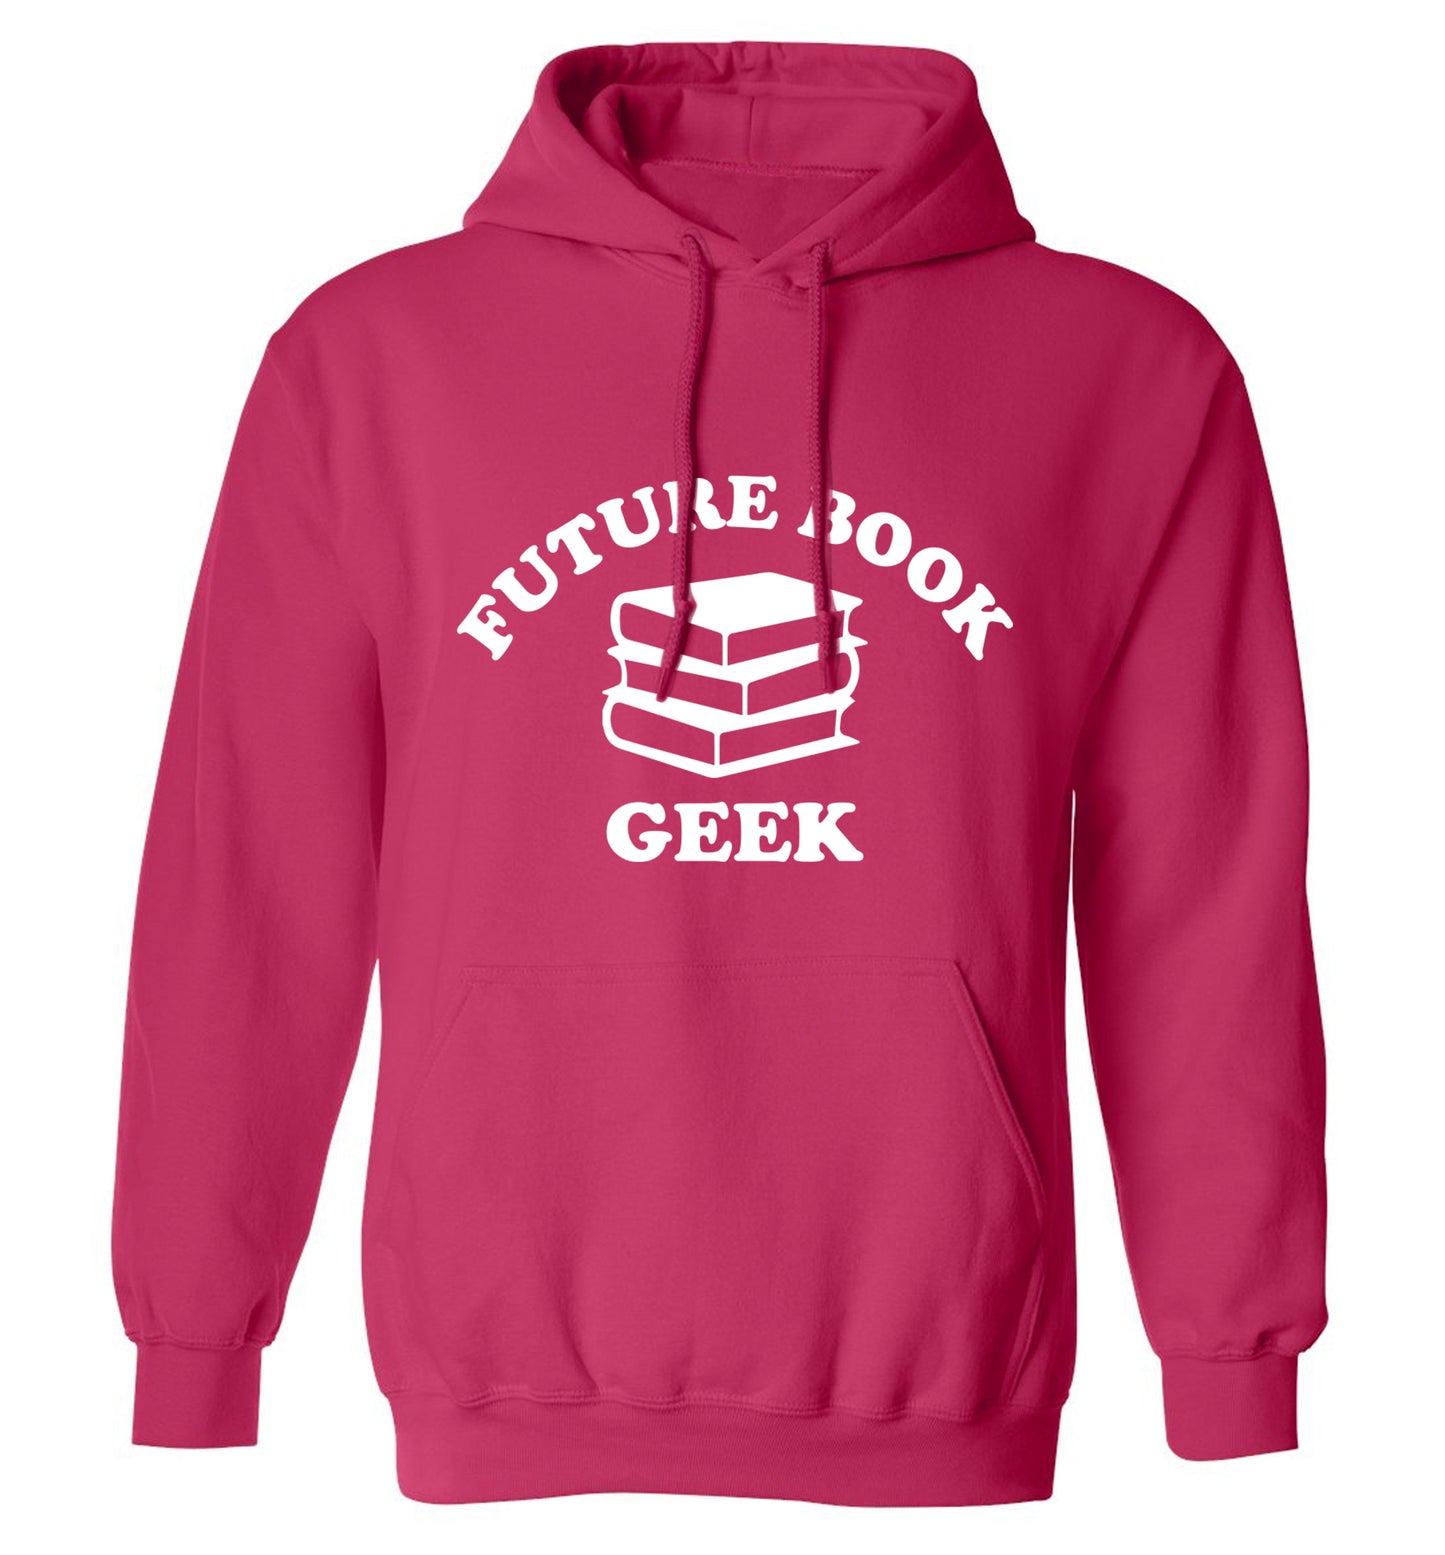 Future book geek adults unisex pink hoodie 2XL